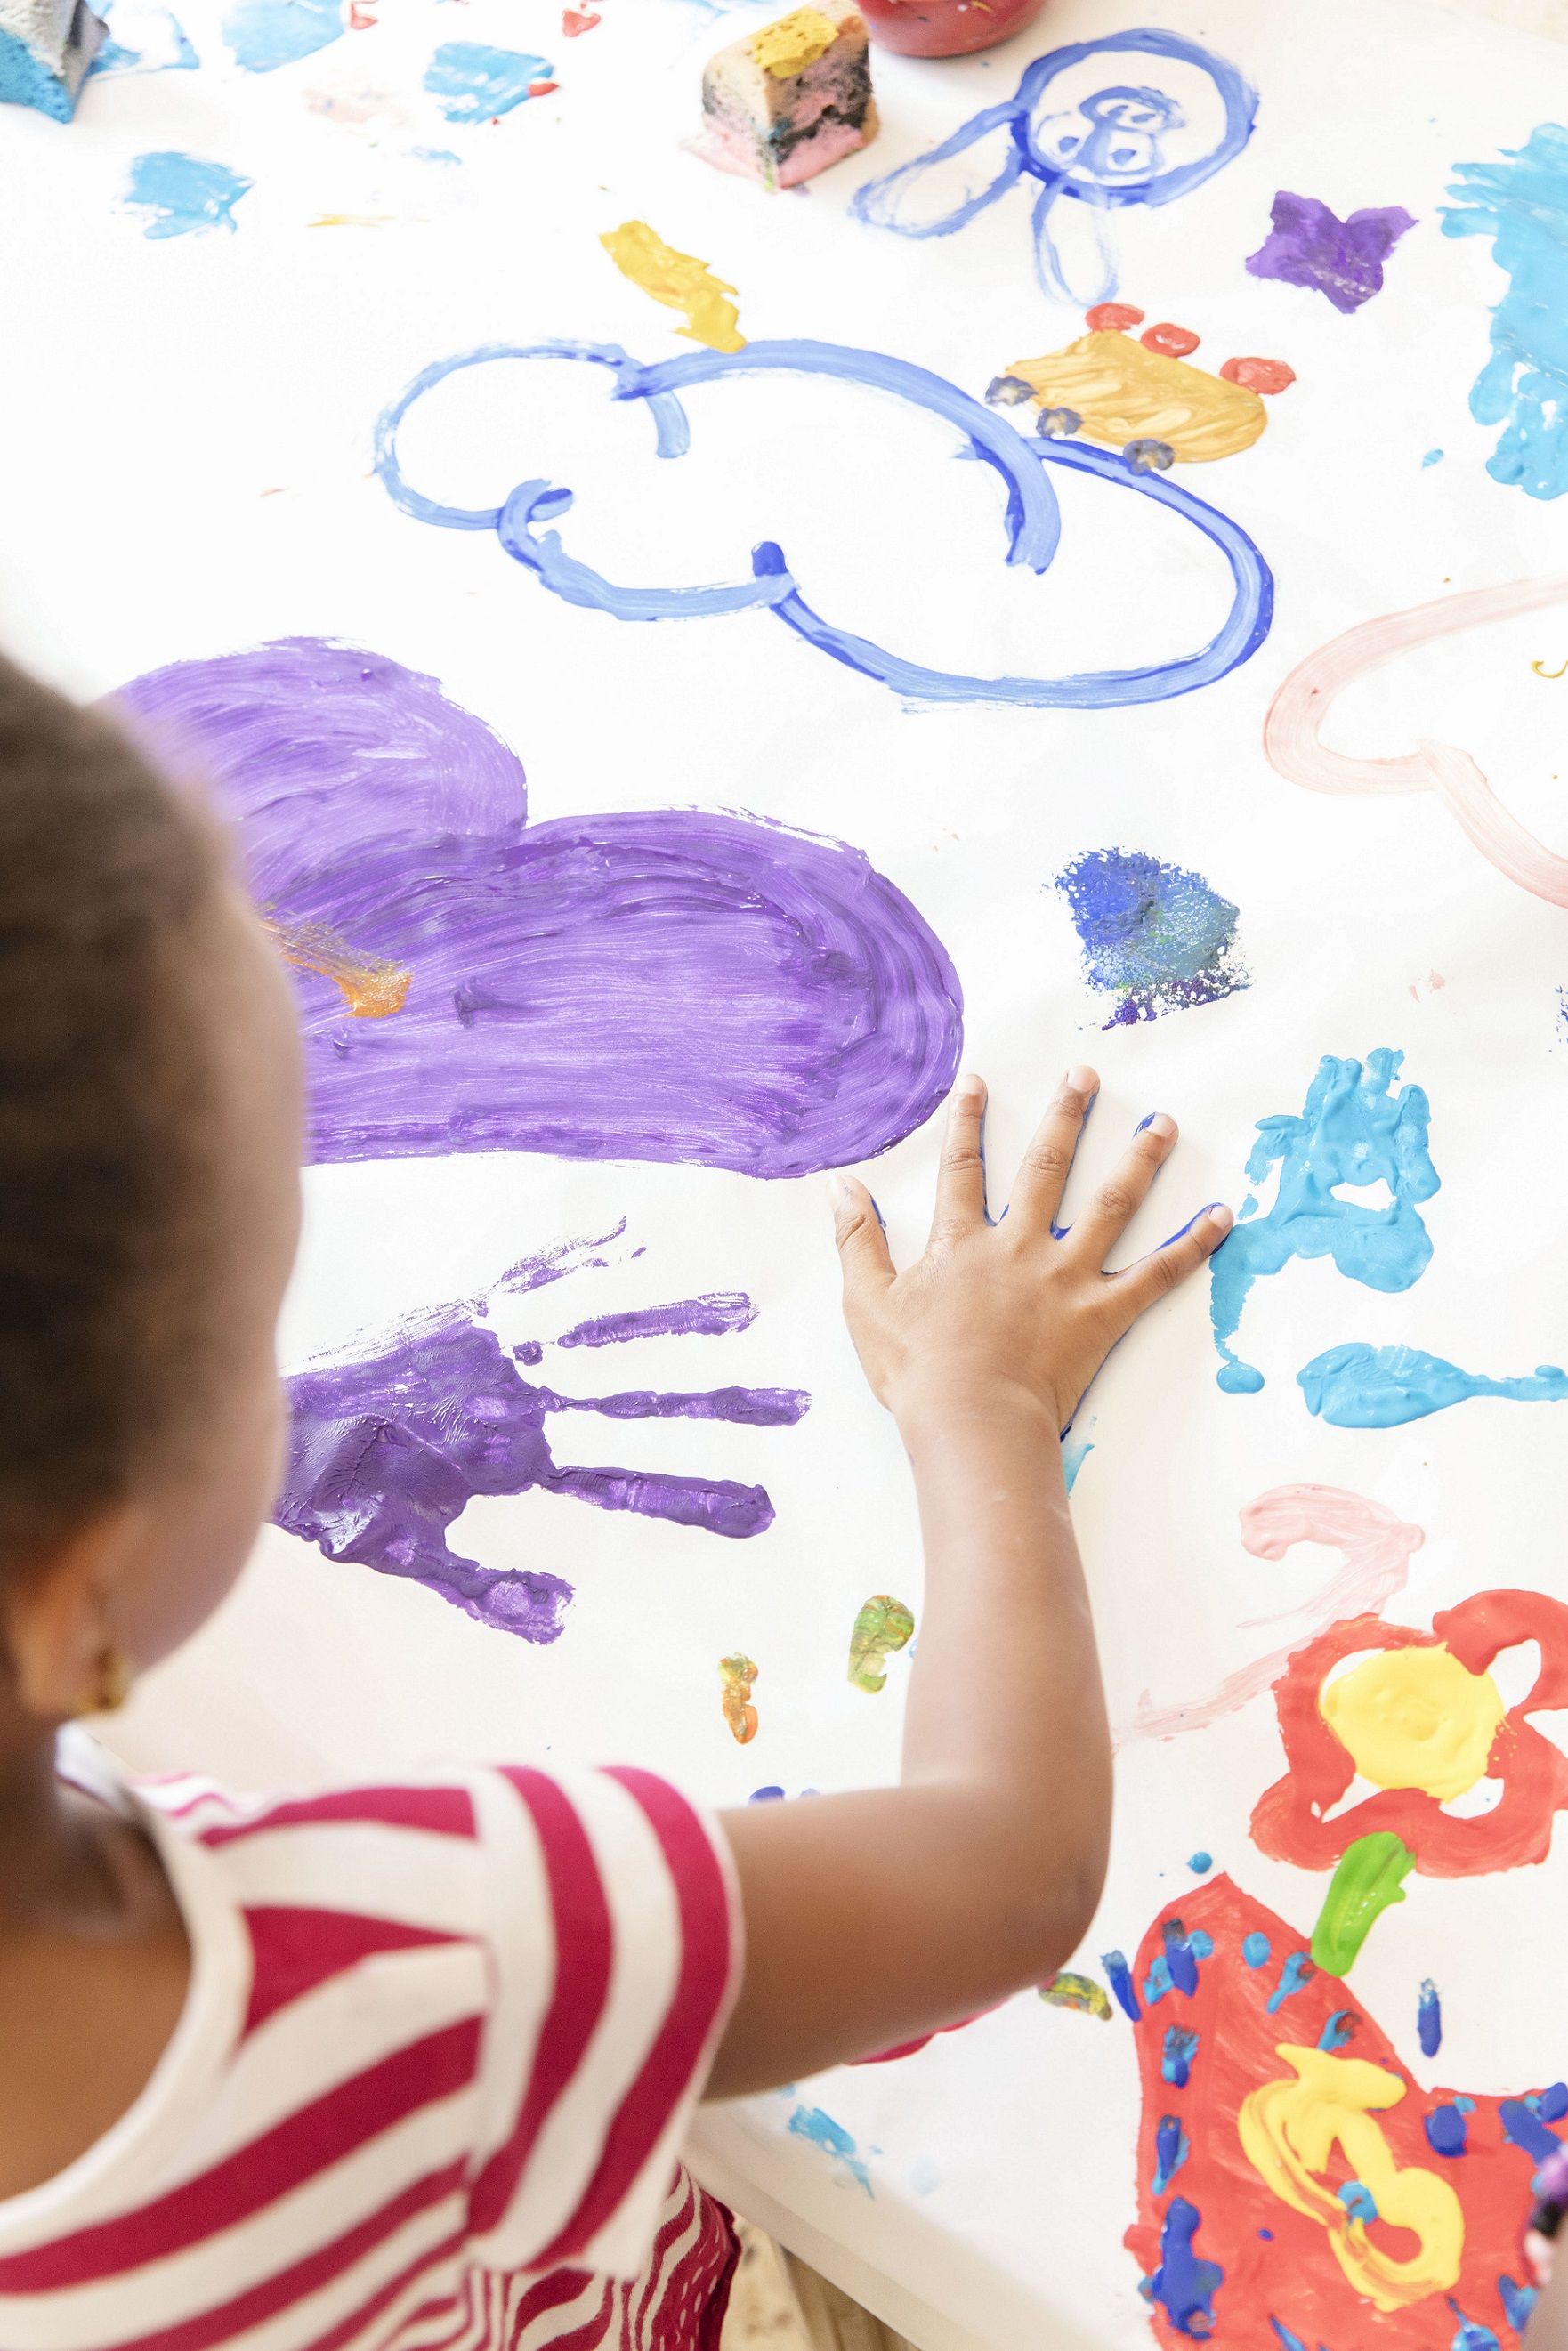 La Asociación Entre Amigos, con la colaboración de CaixaProinfancia, proponen actividades para fomentar la creatividad de los niños mientras se divierten